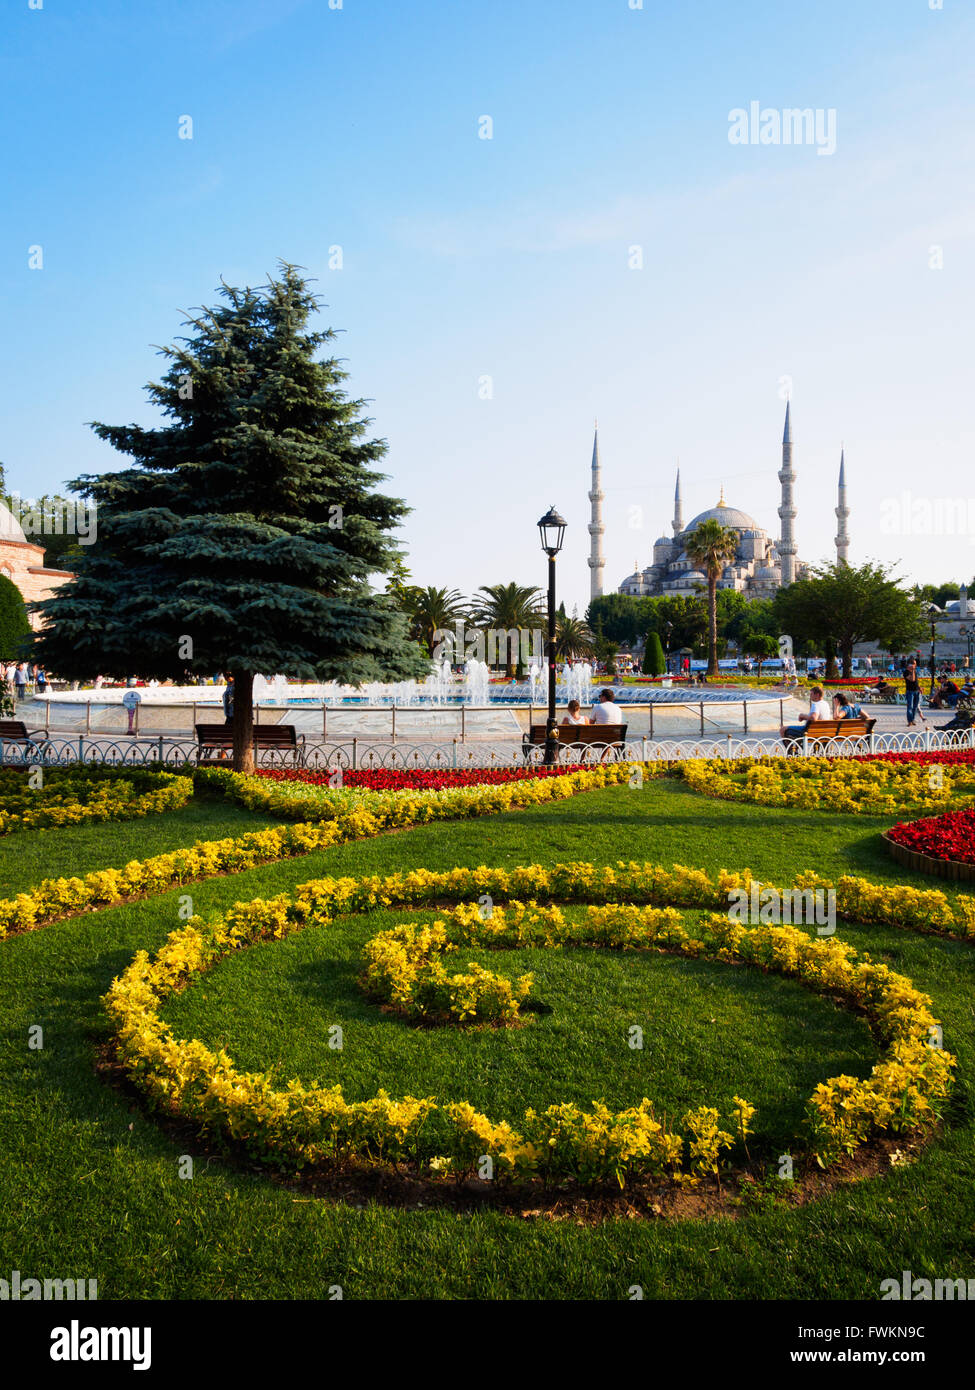 Blick über gelbe und rote Blumen-Garten im Sultanahment Park, die berühmte blaue Moschee (Sultan Ahmed Mosque) in Istanbul, Türkei Stockfoto